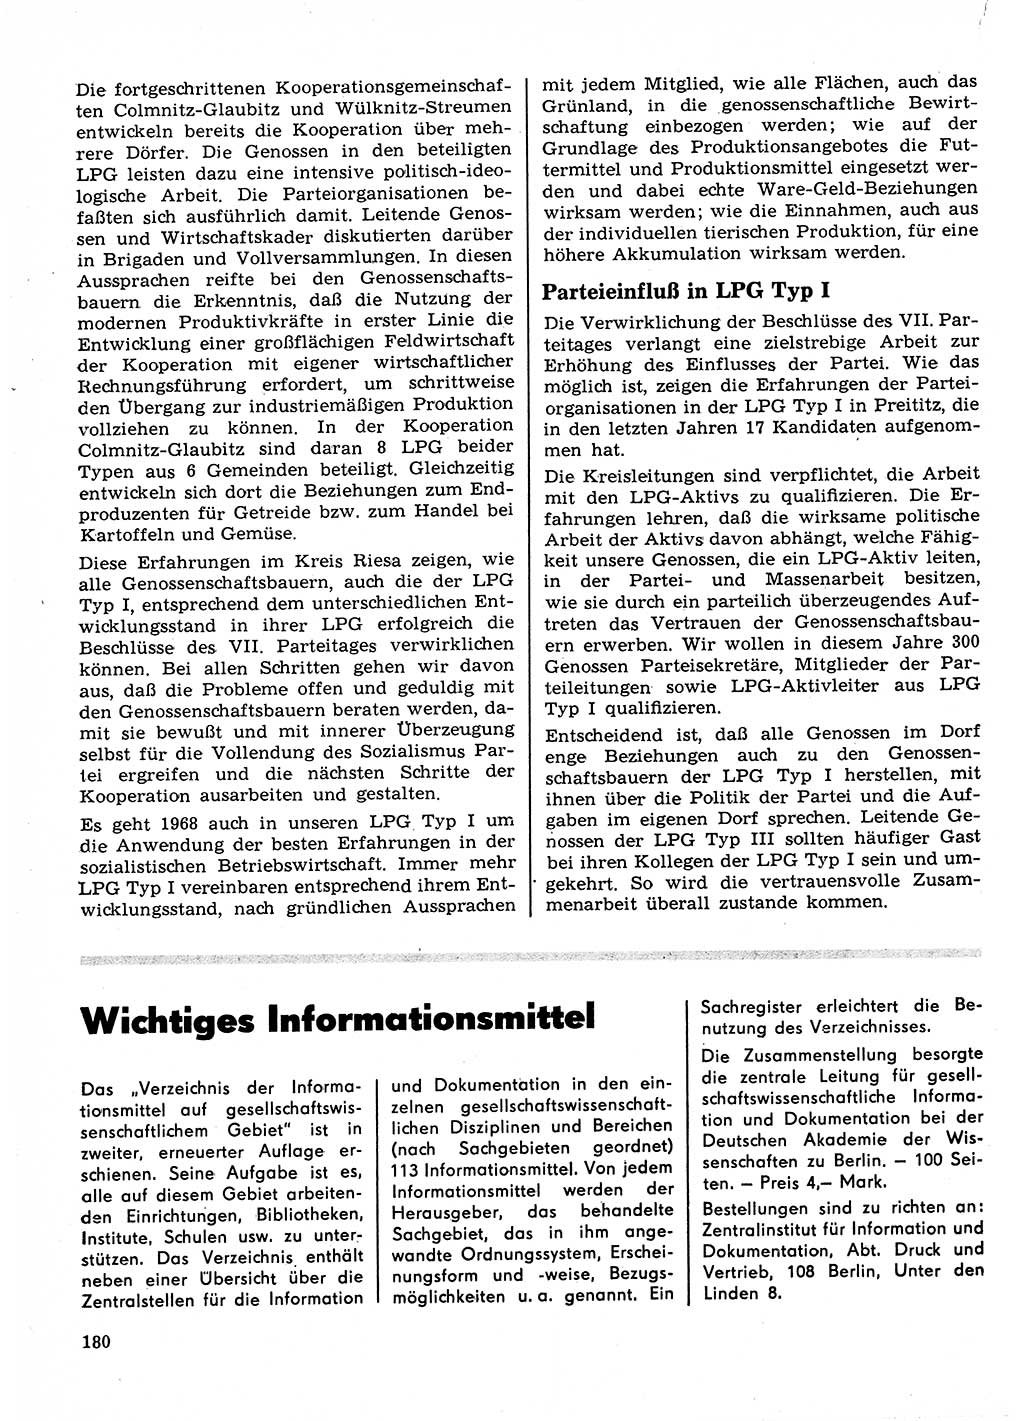 Neuer Weg (NW), Organ des Zentralkomitees (ZK) der SED (Sozialistische Einheitspartei Deutschlands) für Fragen des Parteilebens, 23. Jahrgang [Deutsche Demokratische Republik (DDR)] 1968, Seite 180 (NW ZK SED DDR 1968, S. 180)